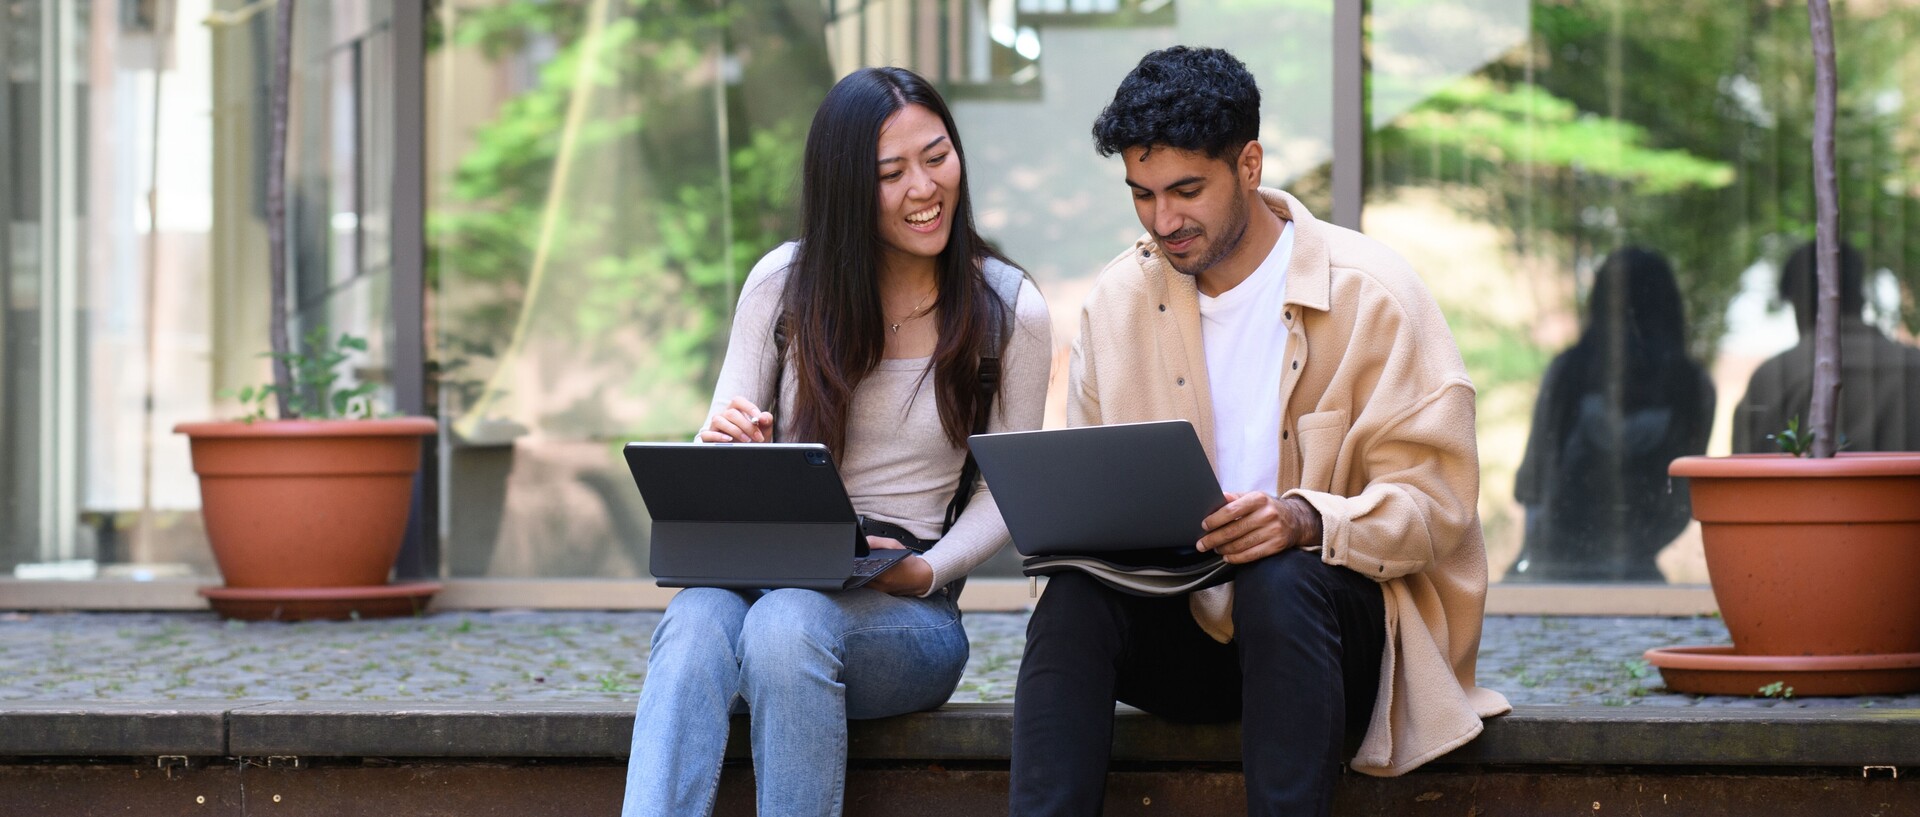 Ein Student und eine Studentin sitzen draußen auf einer Mauer und lernen gemeinsam an ihren Laptops.